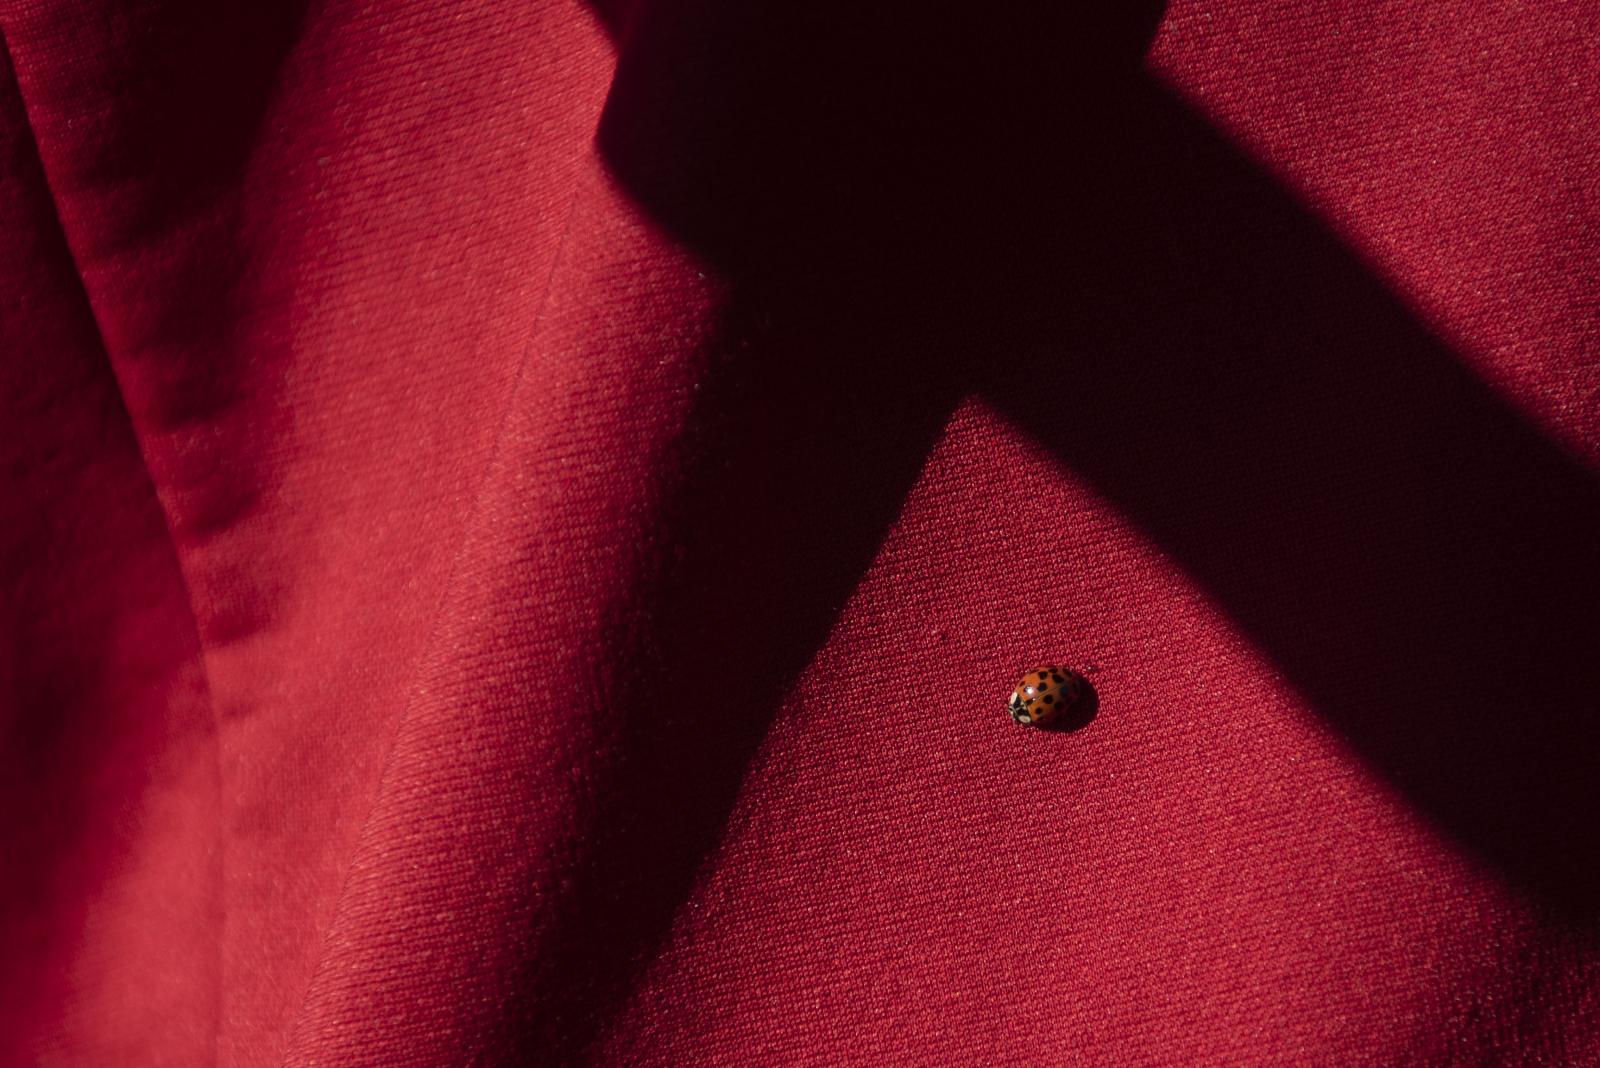 Moments - A ladybug lands on Sophie’s shirt Nov. 27, 2021, in Rich...